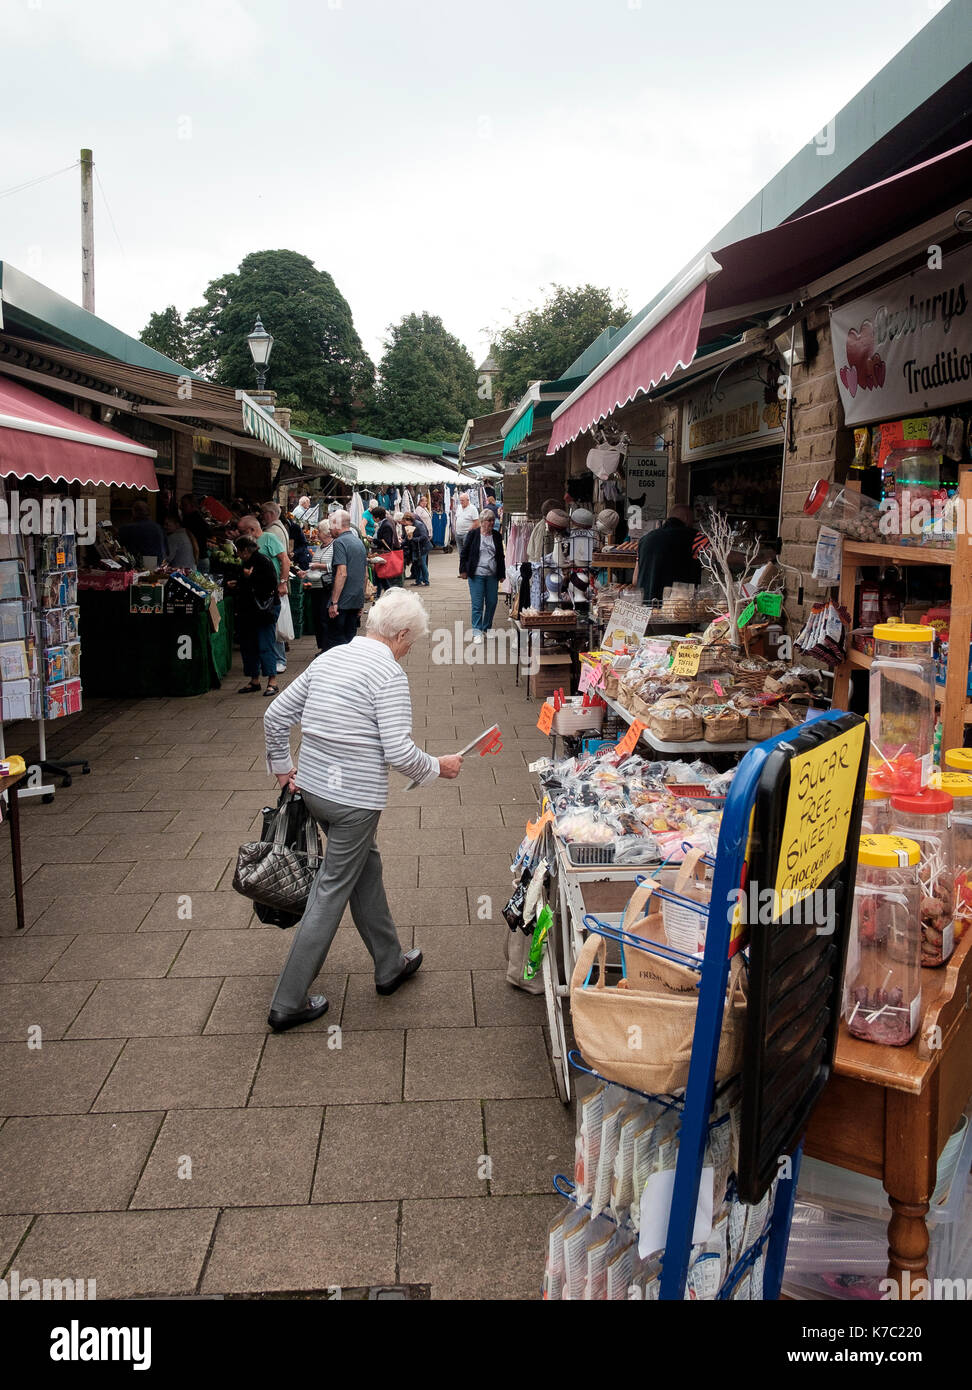 Les clients dans le nouveau marché dans le centre de la ville de clitheroe lancashire Banque D'Images